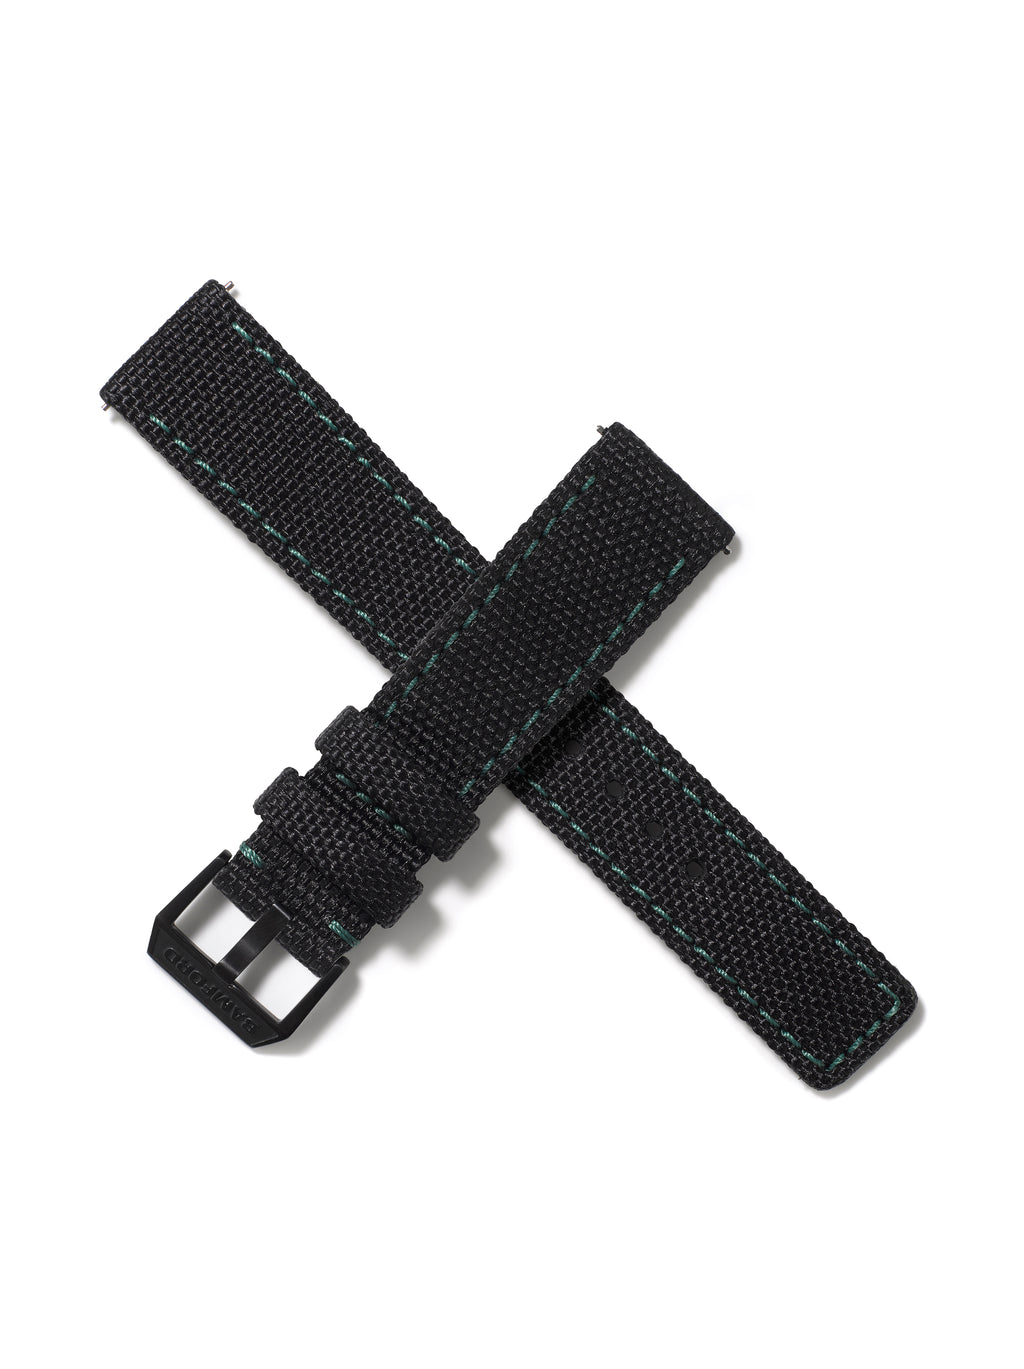 20mm Cordura Strap - Black with Dark Green Stitch